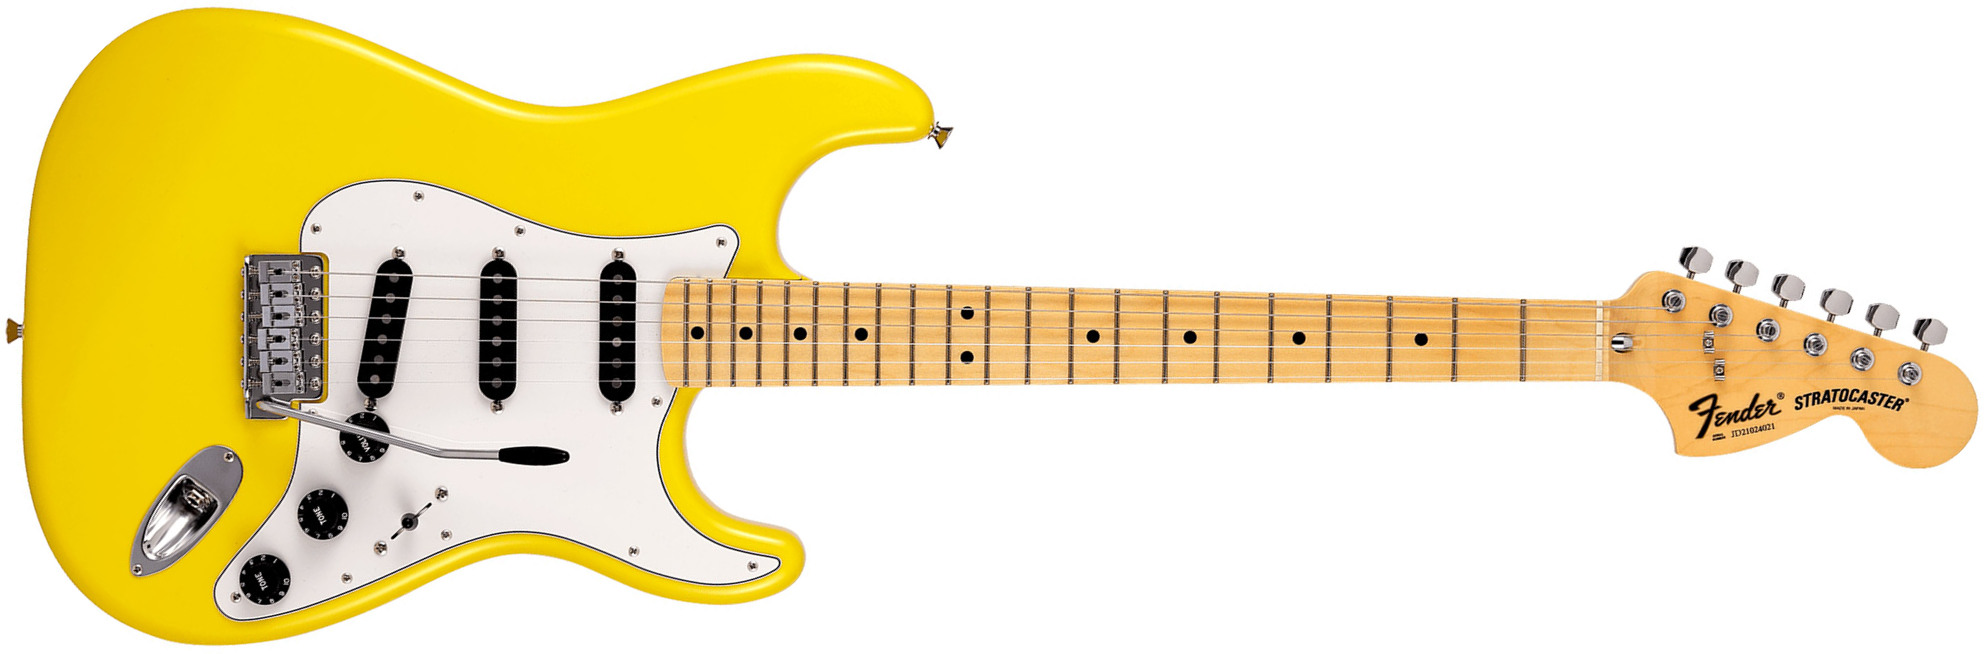 Fender Strat International Color Ltd Jap 3s Trem Mn - Monaco Yellow - Guitarra eléctrica con forma de str. - Main picture